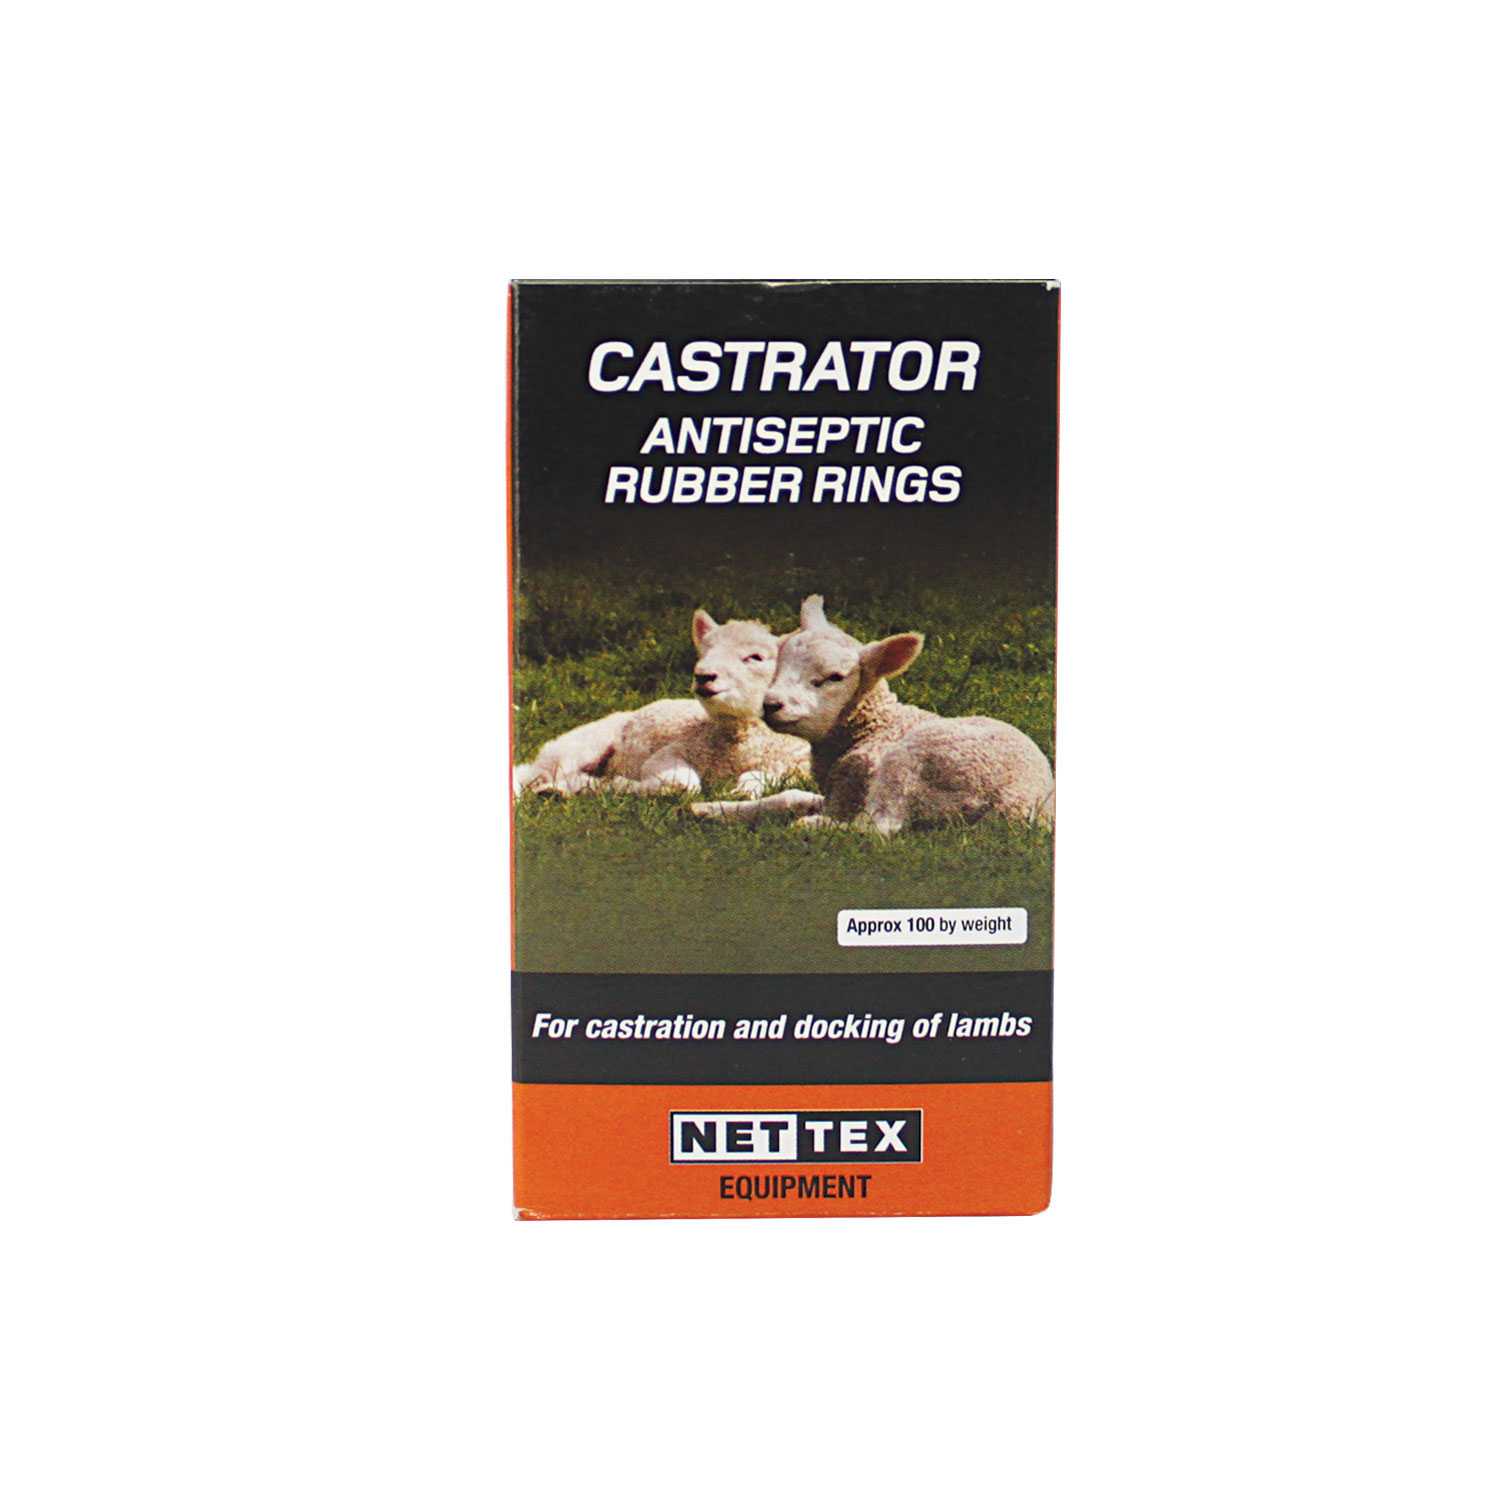 NETTEX CASTRATOR ANTISEPTIC RUBBER RINGS100 BOX